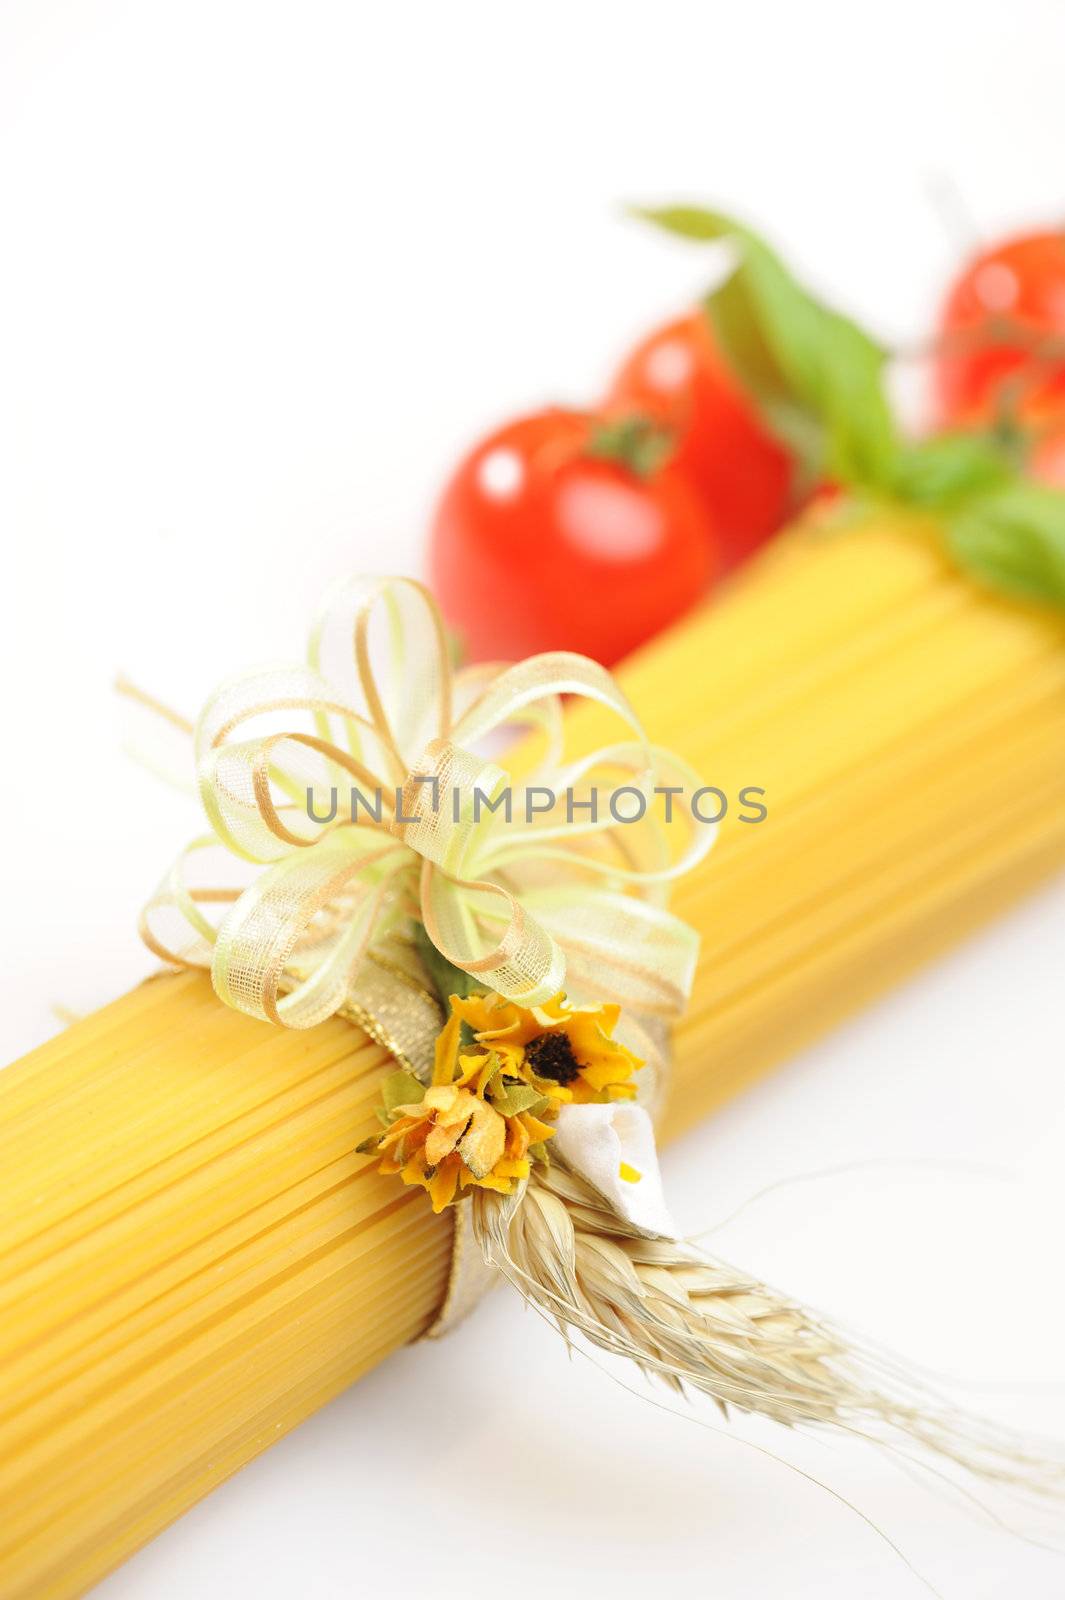 spaghetti, italian pasta: similar picture on my portfolio by stokkete